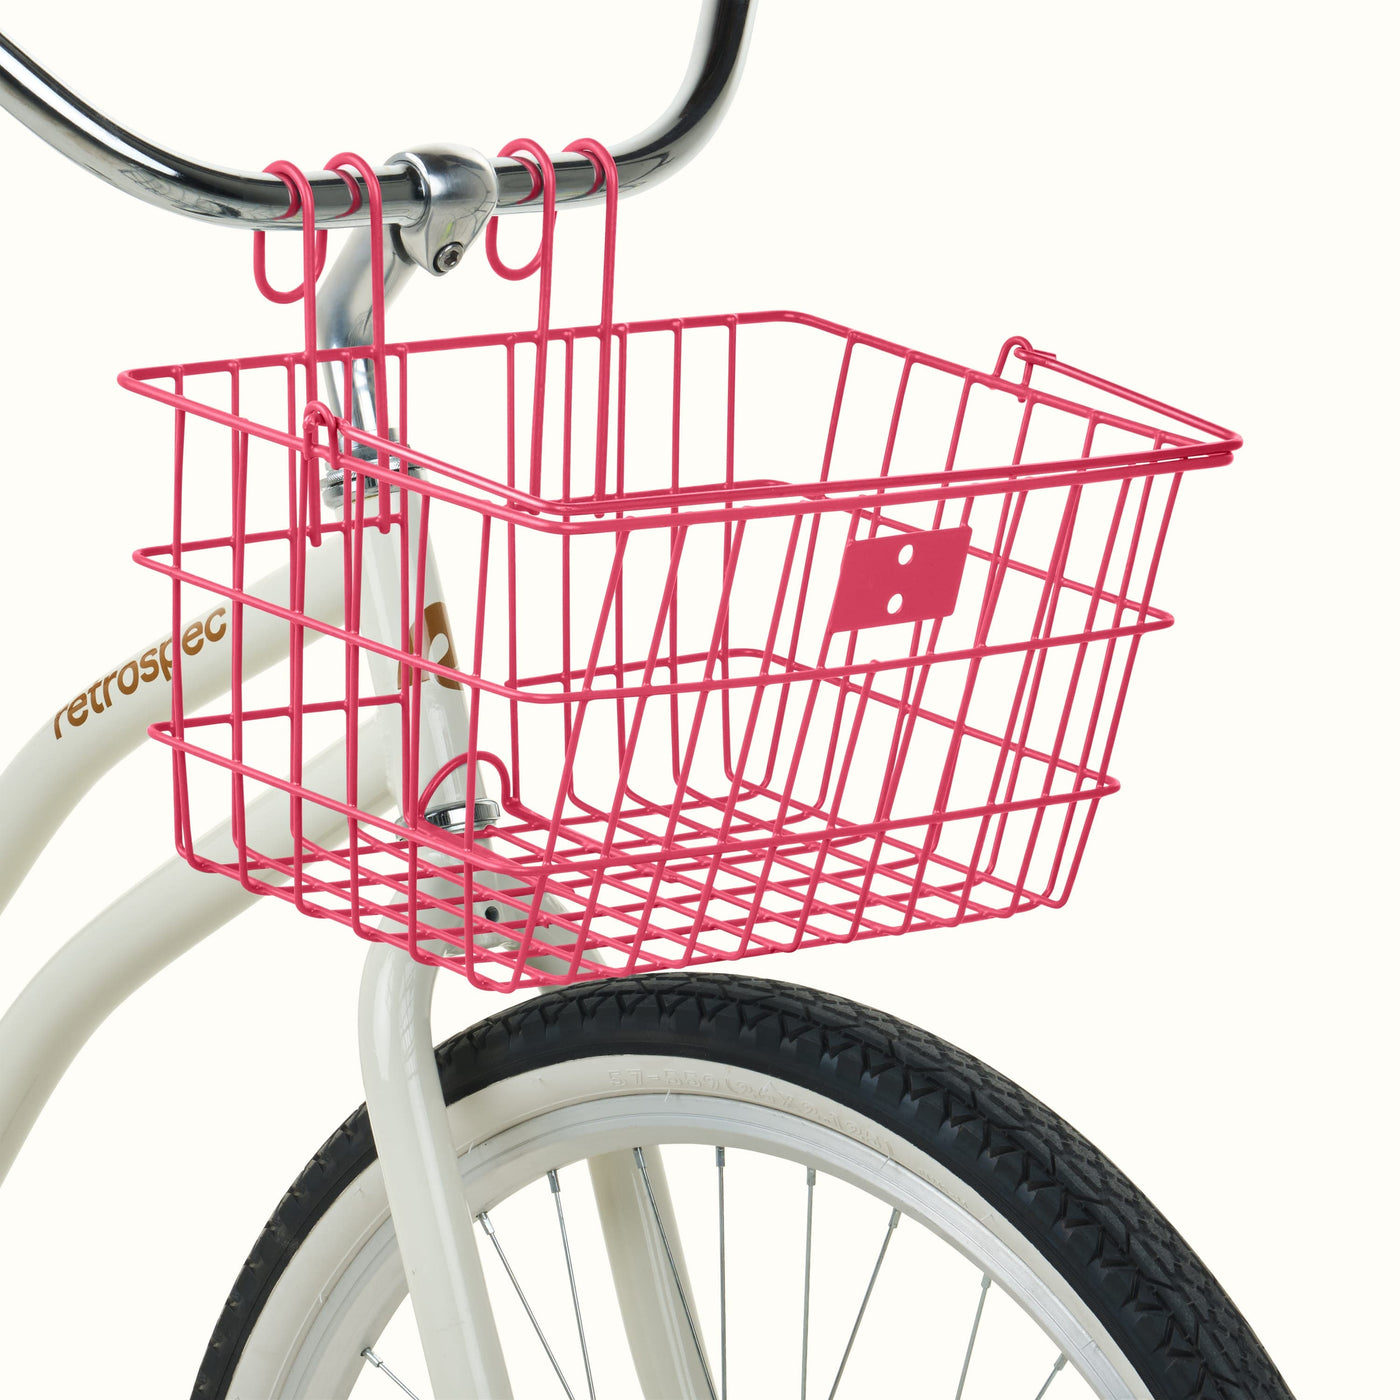 Apollo-Lite Bike Basket | Pink (Legacy)